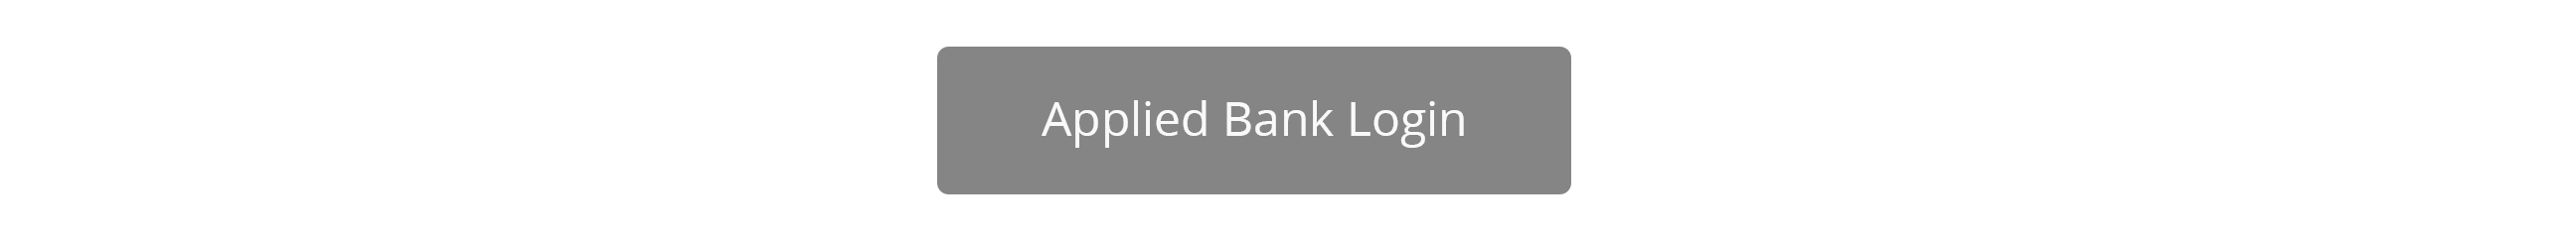 Applied Bank Login